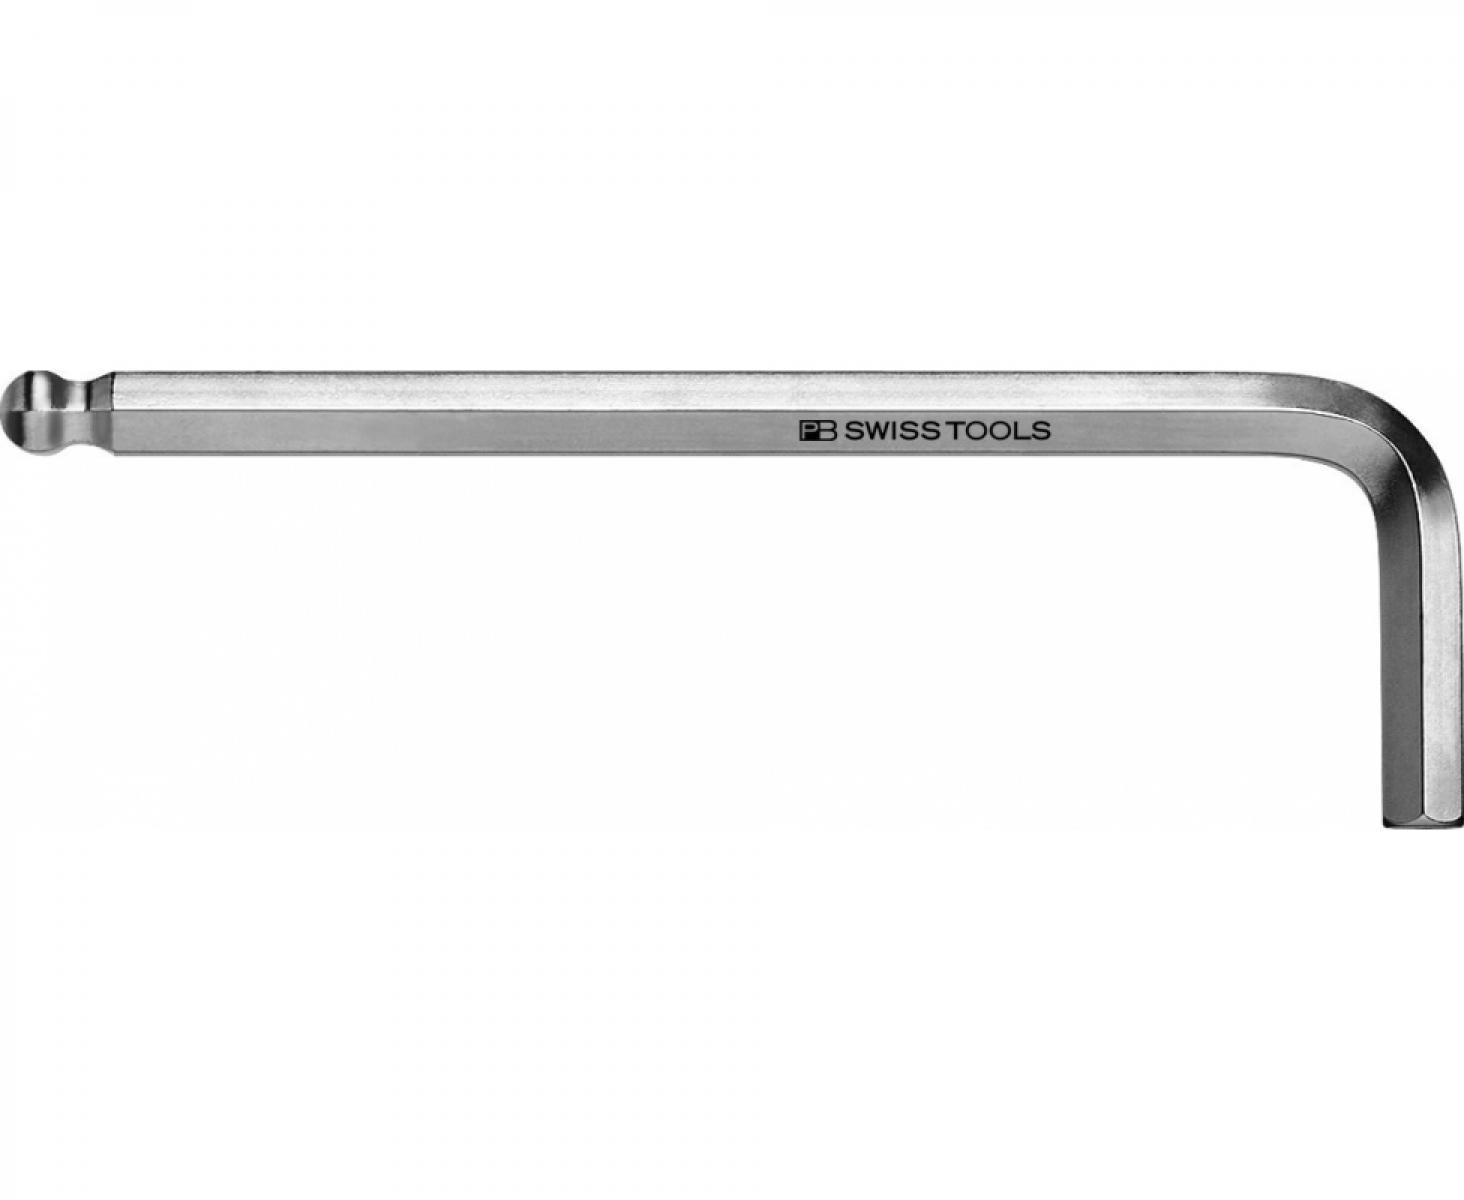 Ключ штифтовый HEX PB Swiss Tools PB 212Z.1/16 со сферической головкой дюймовый